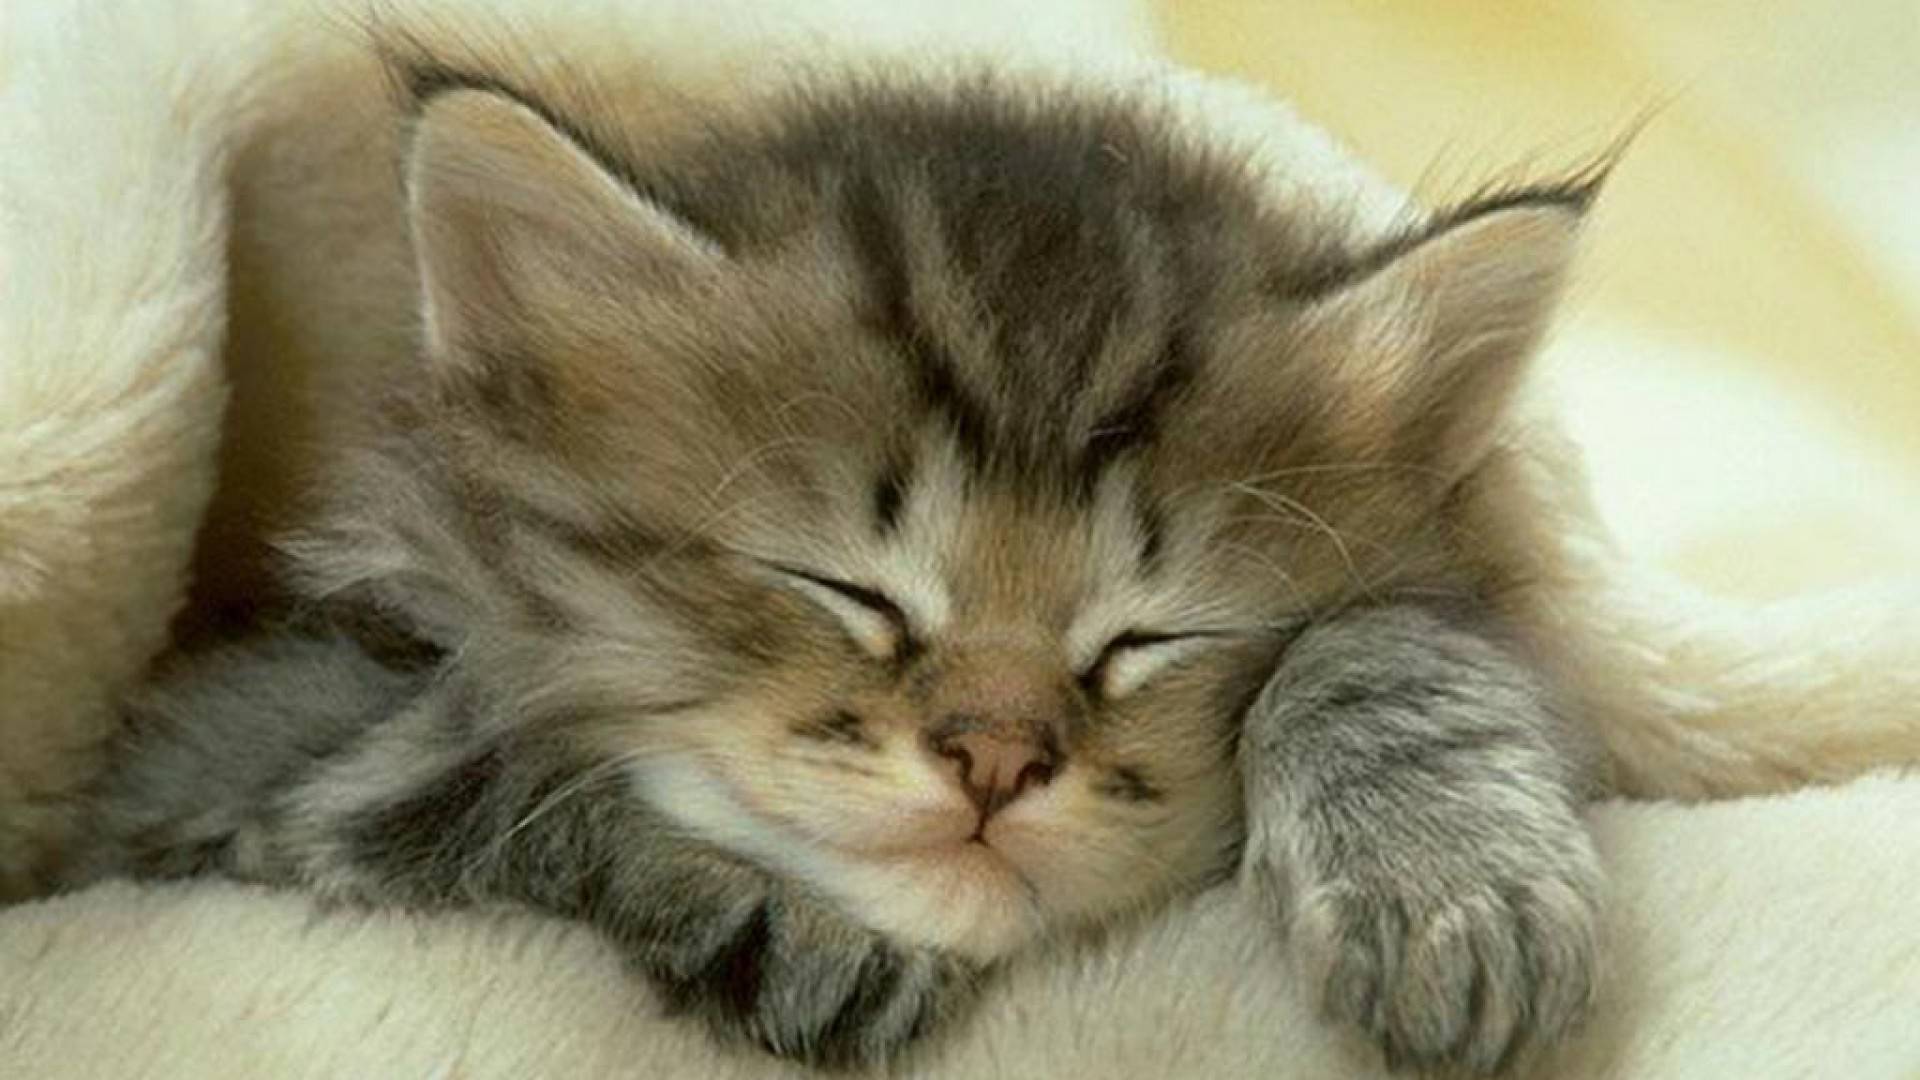 Cute cat sleeping